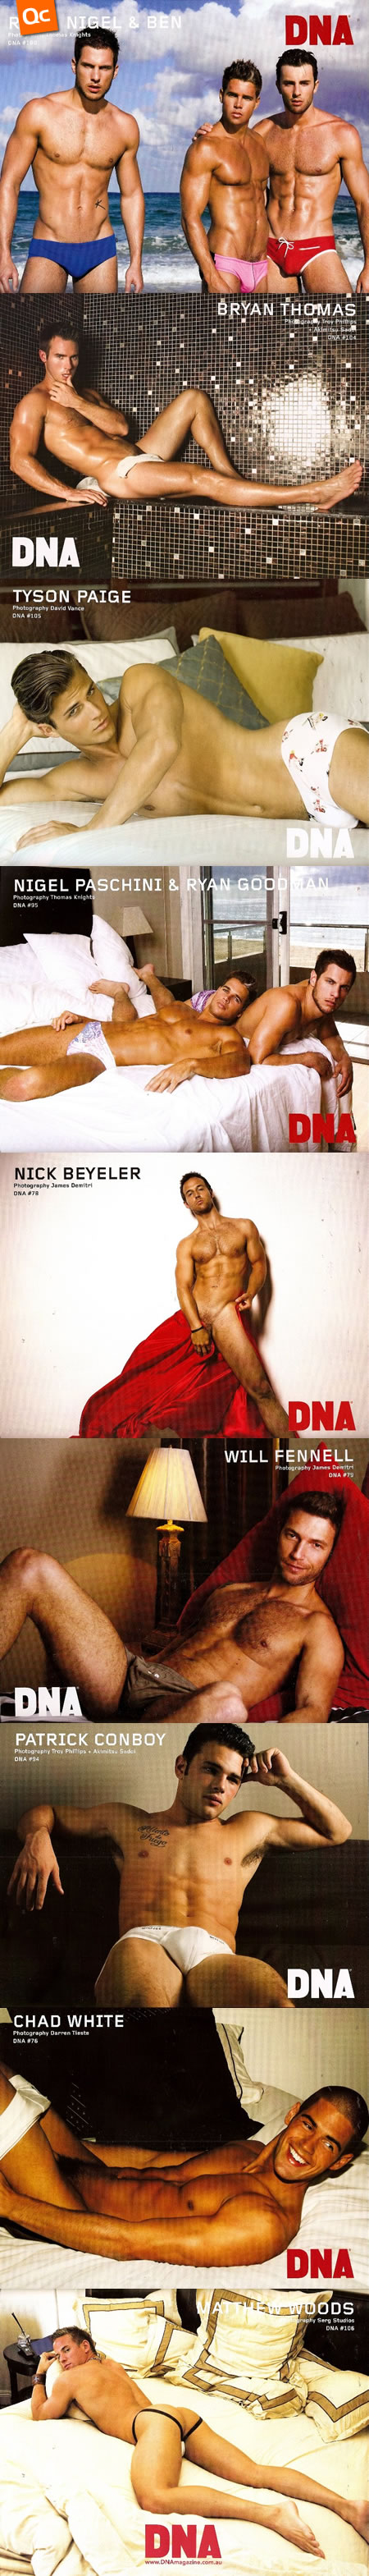 Calendario DNA 2009